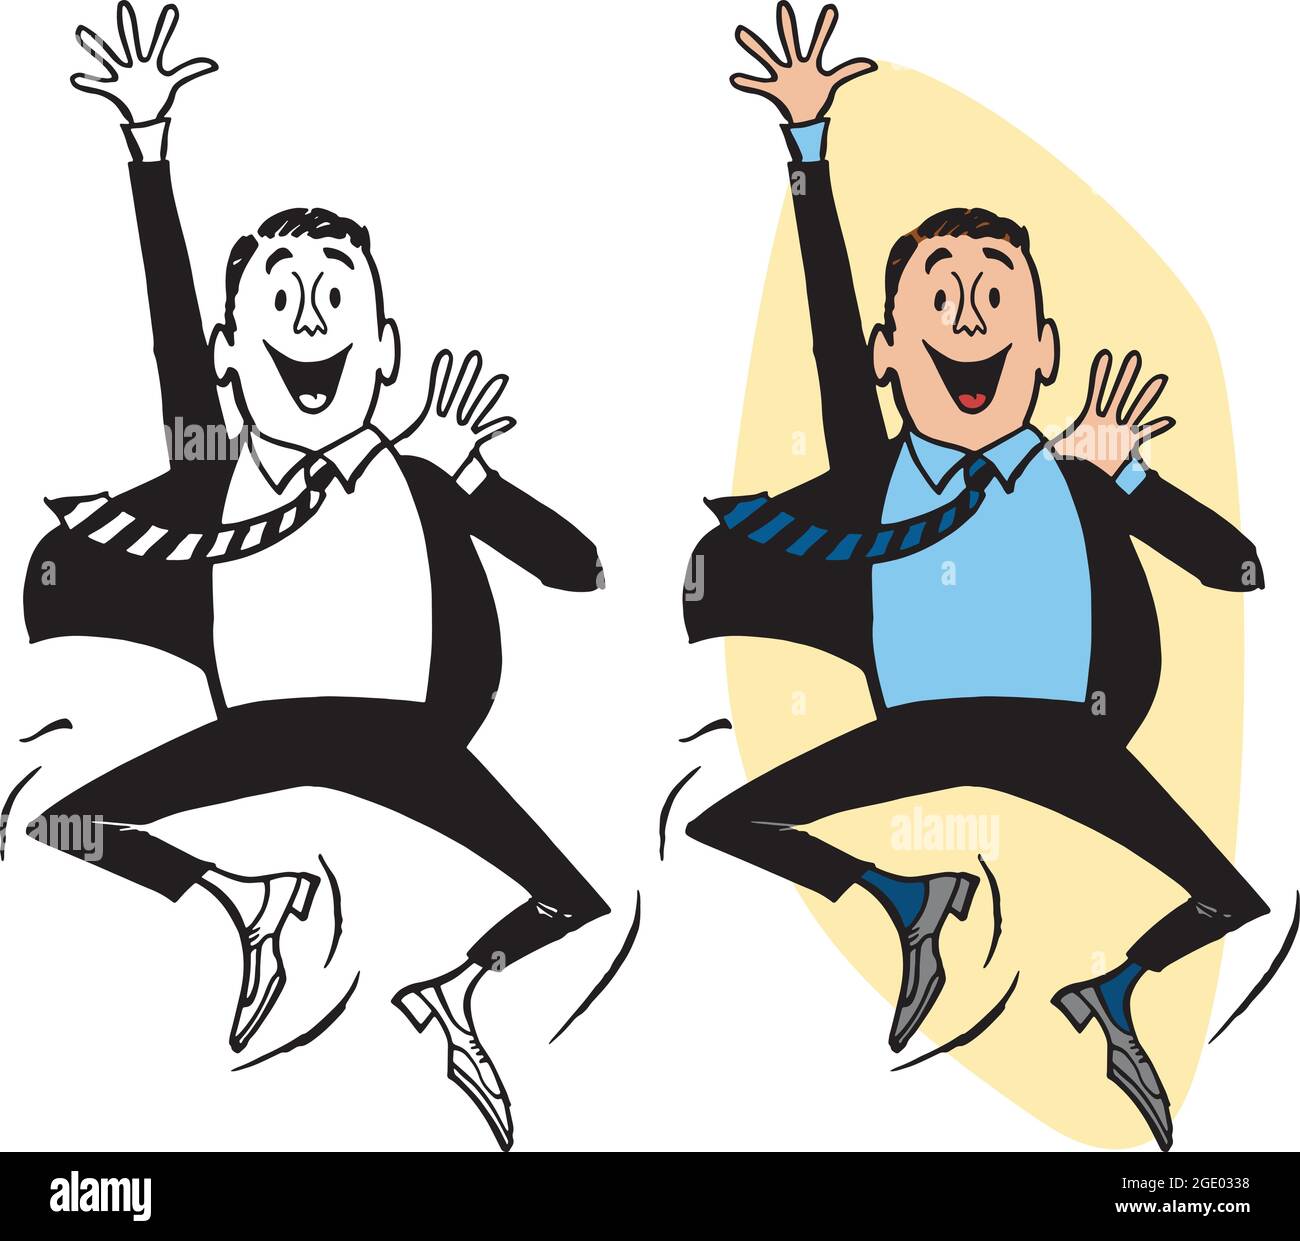 Un dessin animé rétro vintage d'un homme d'affaires enthousiaste qui saute et descend. Illustration de Vecteur